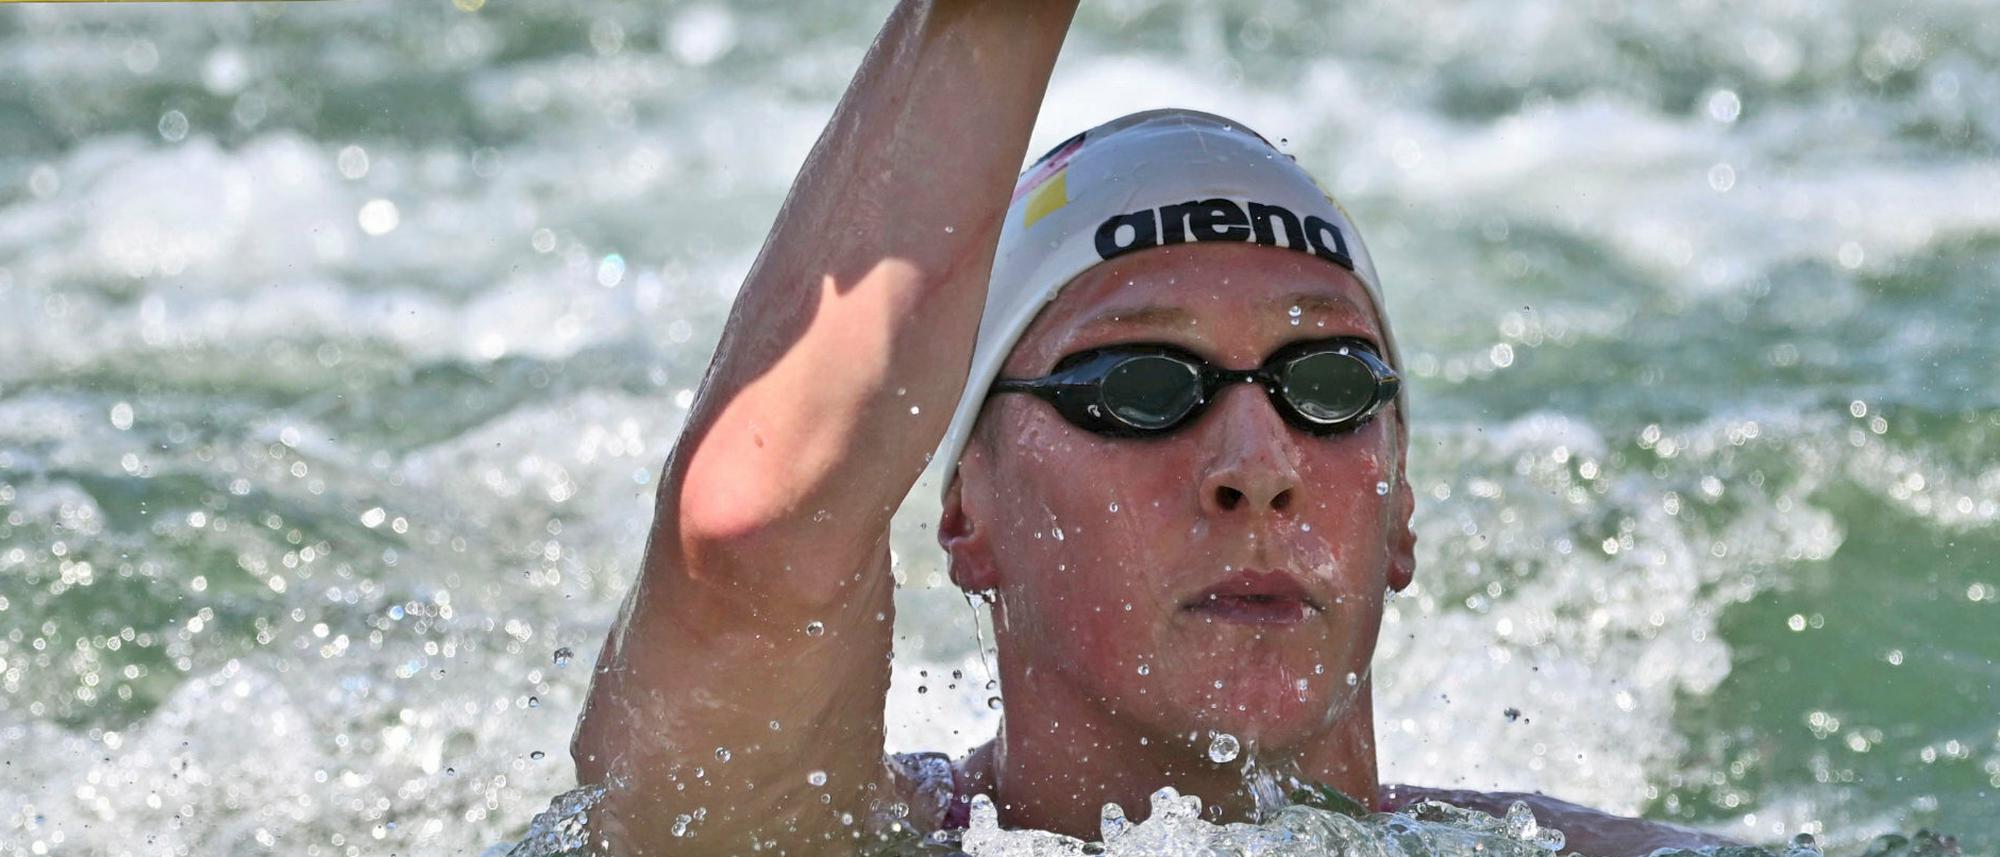 Schwimm-WM in Budapest Florian Wellbrock holt Gold über fünf Kilometer